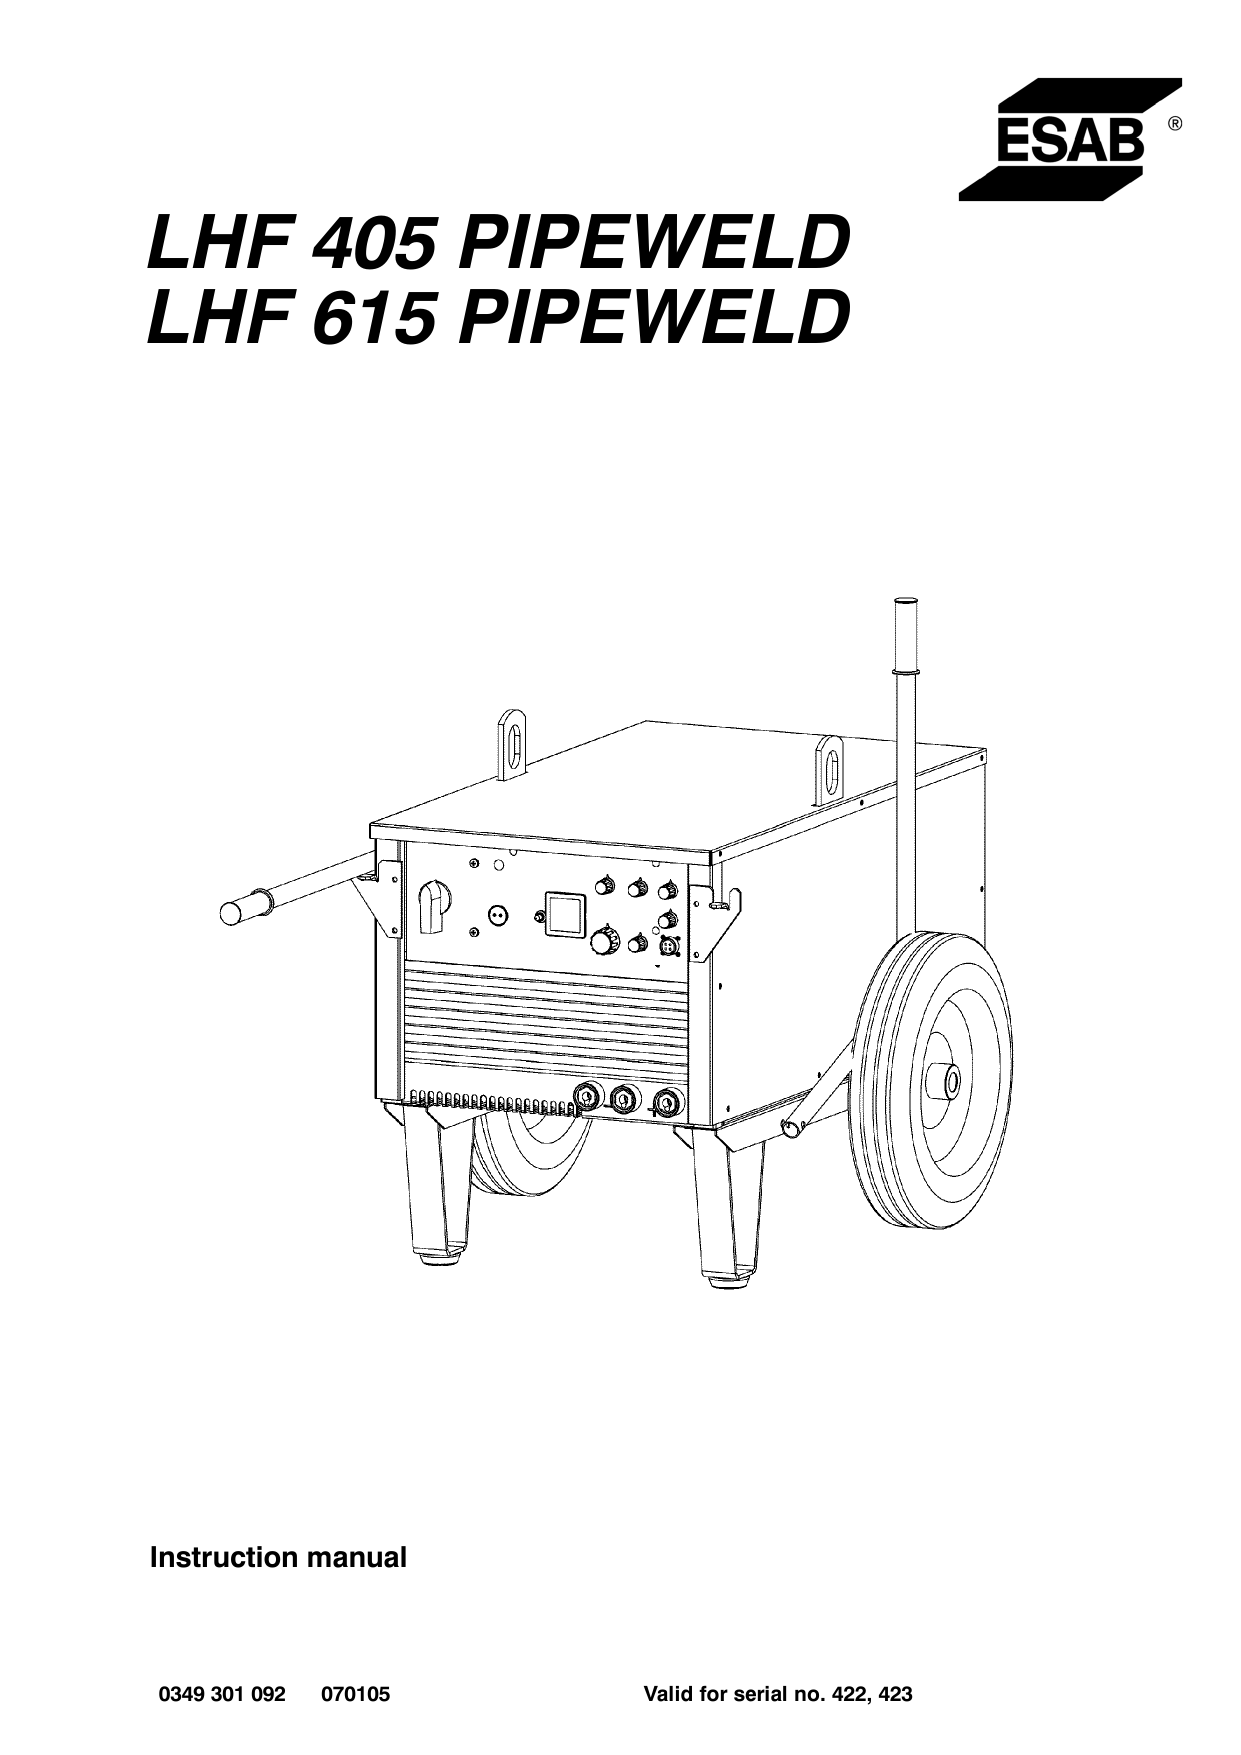 LHF 405 Pipeweld, LHF 615 Pipeweld